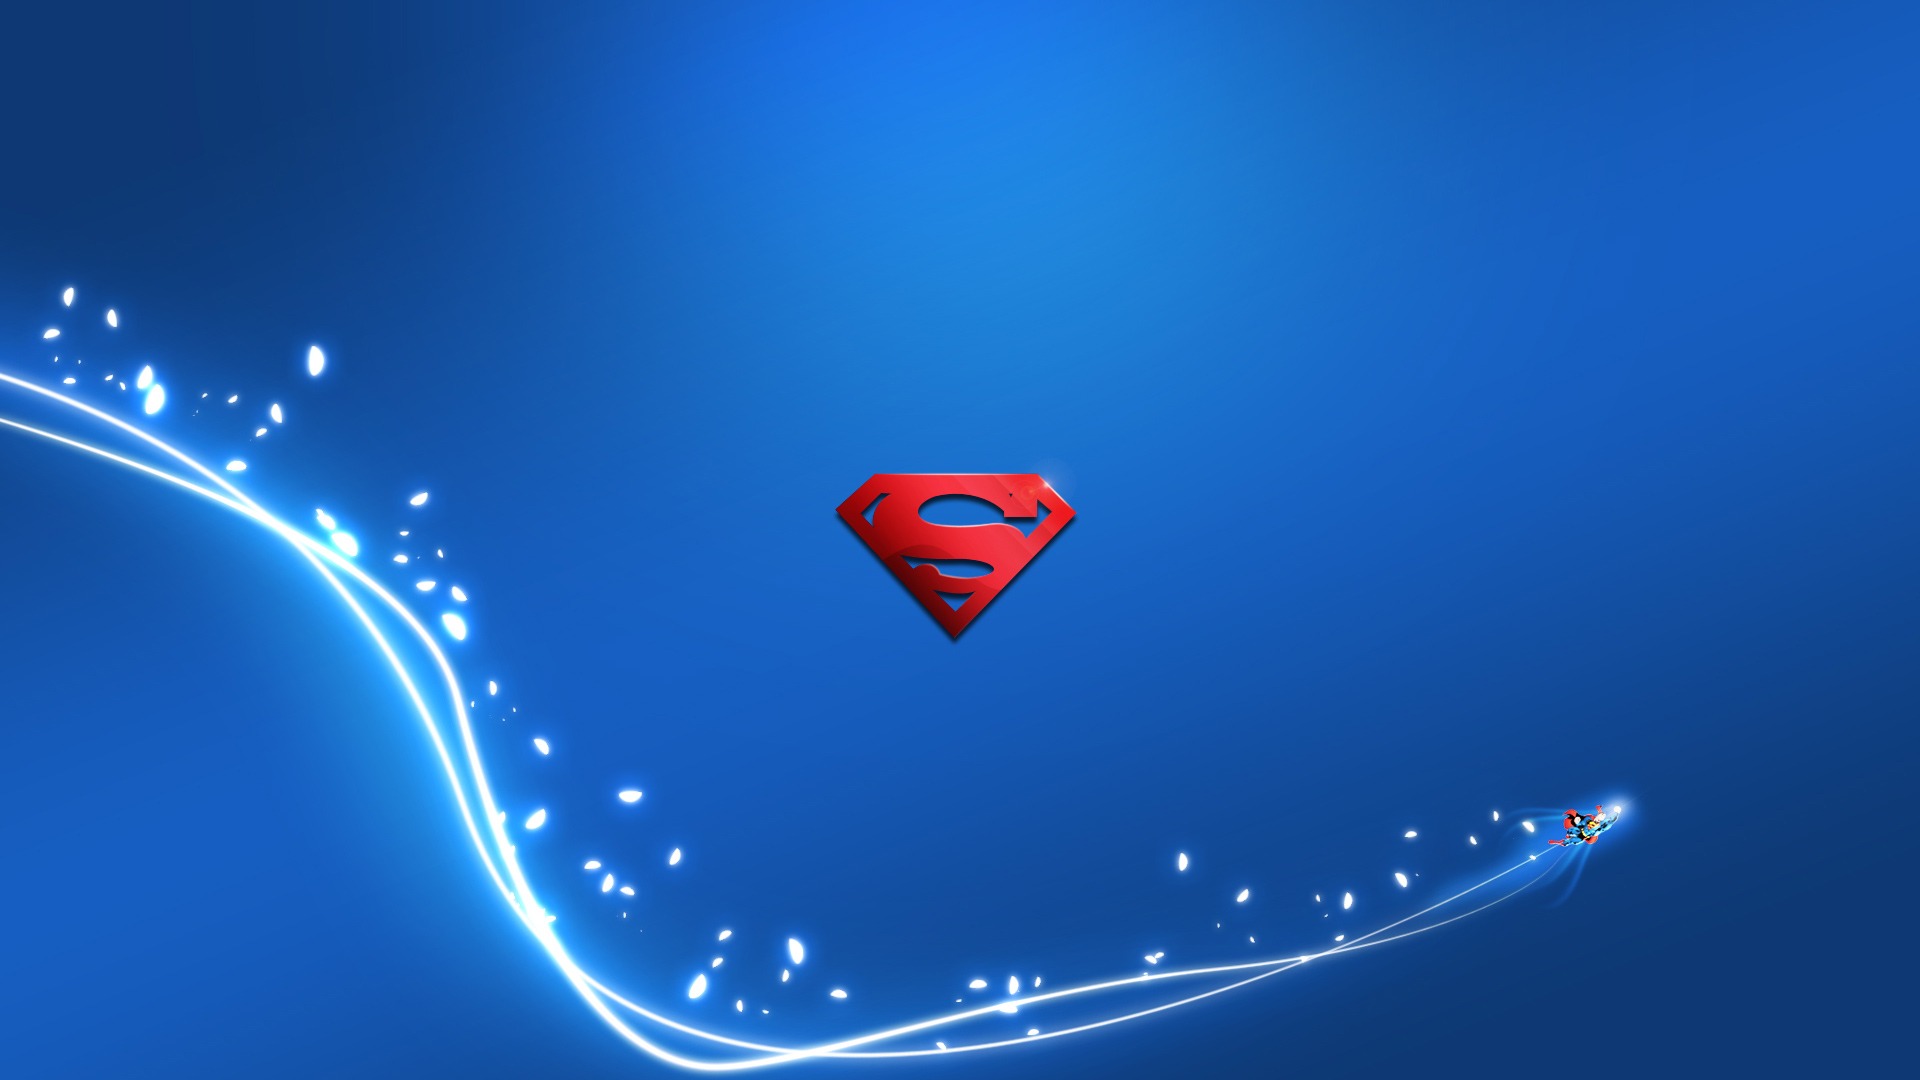 슈퍼맨 바탕 화면,푸른,하늘,강청색,심장,제도법